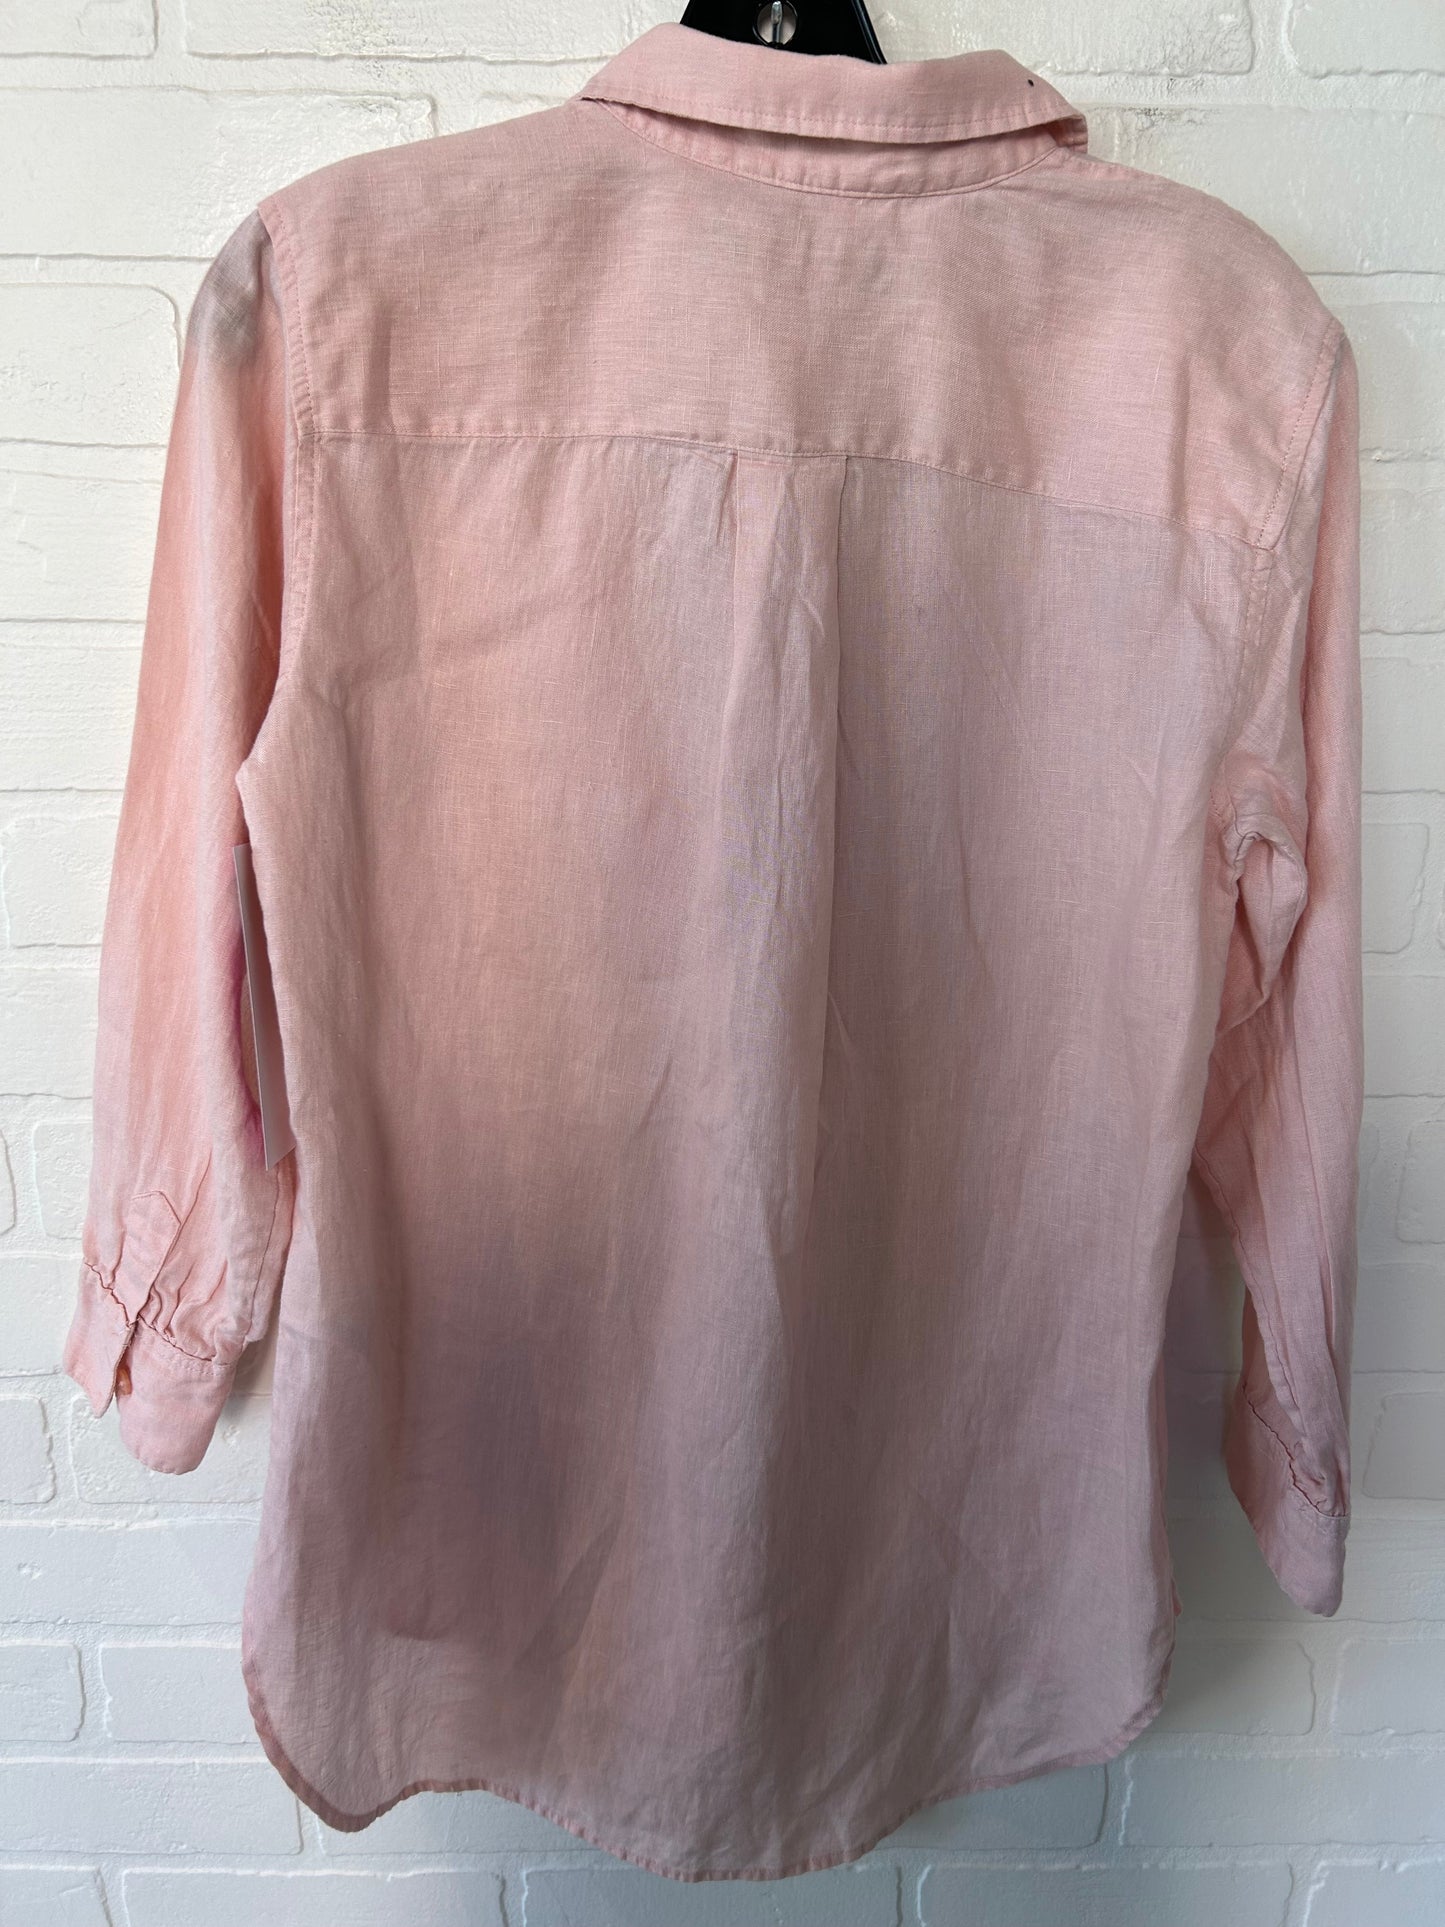 Pink Top Long Sleeve Lauren By Ralph Lauren, Size S